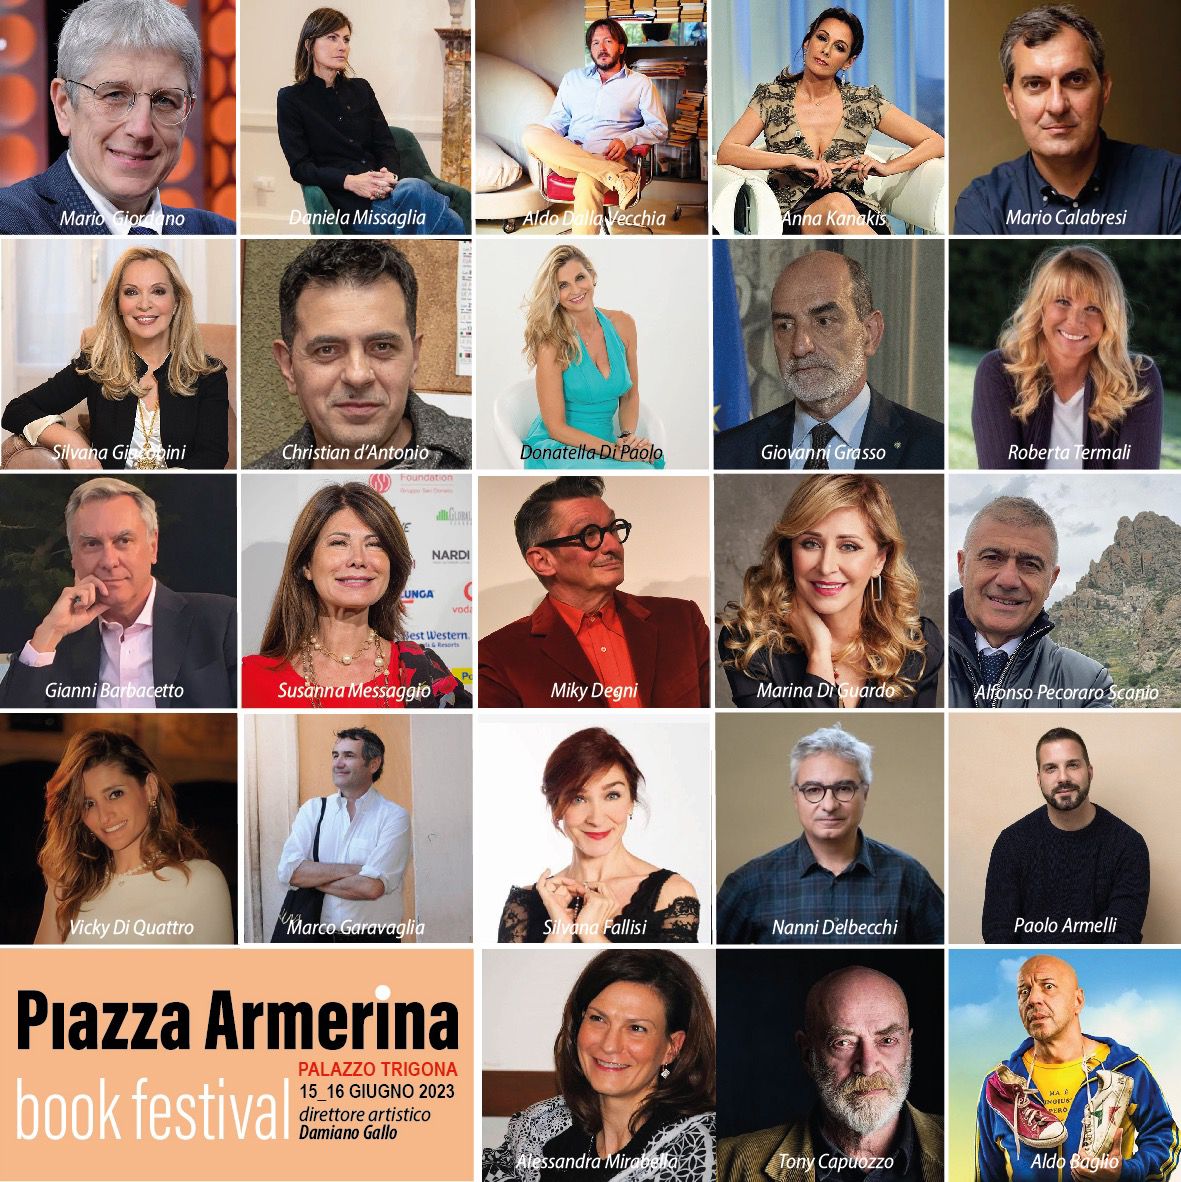 Piazza Armerina Book Festival: due giorni di incontri con la cultura e l’attualità